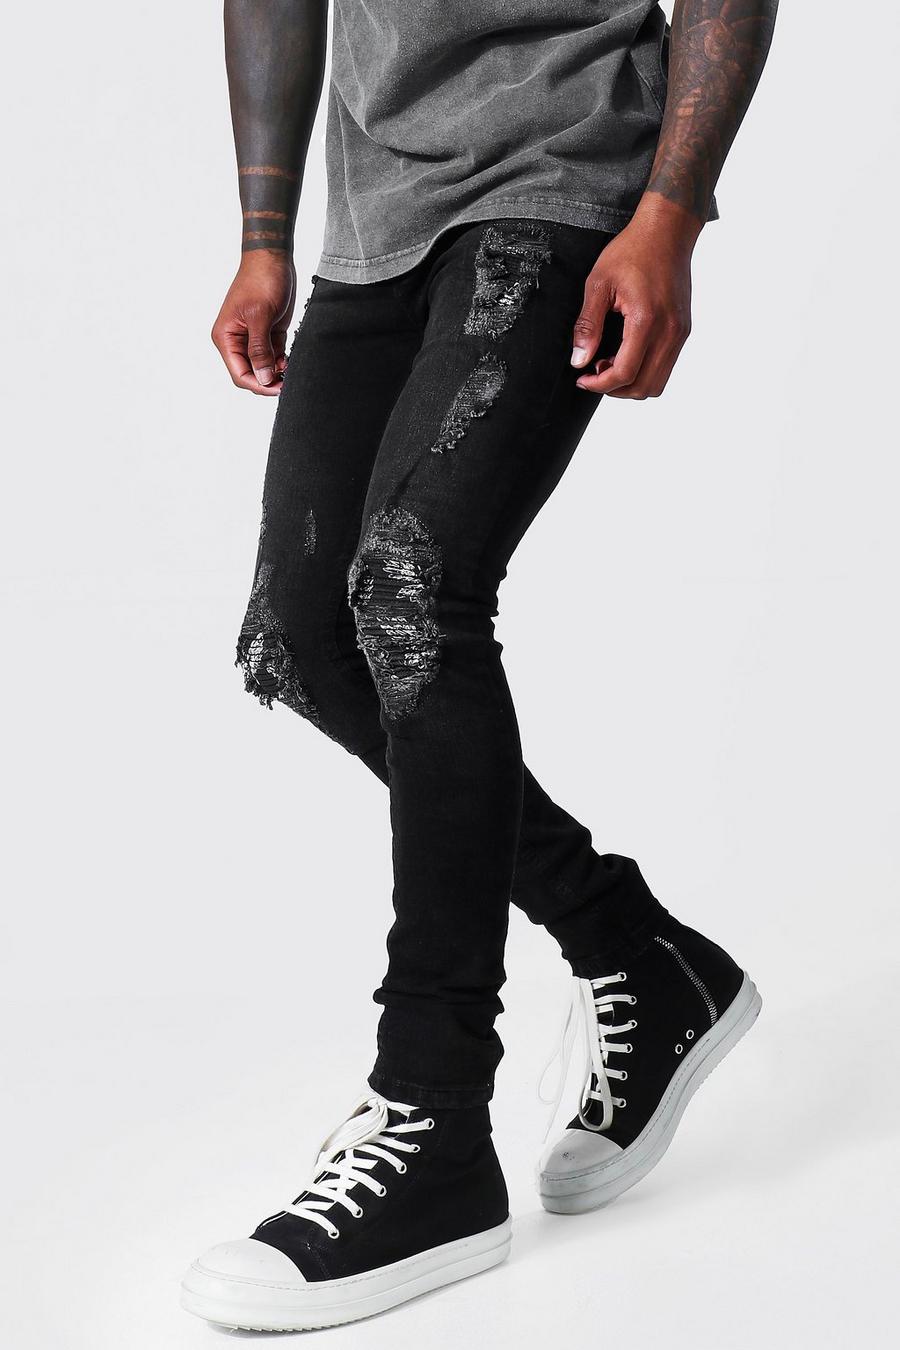 שחור דהוי ג'ינס אופנוענים סופר סקיני בסגנון קרע וטלאי עם הדפס יונים image number 1